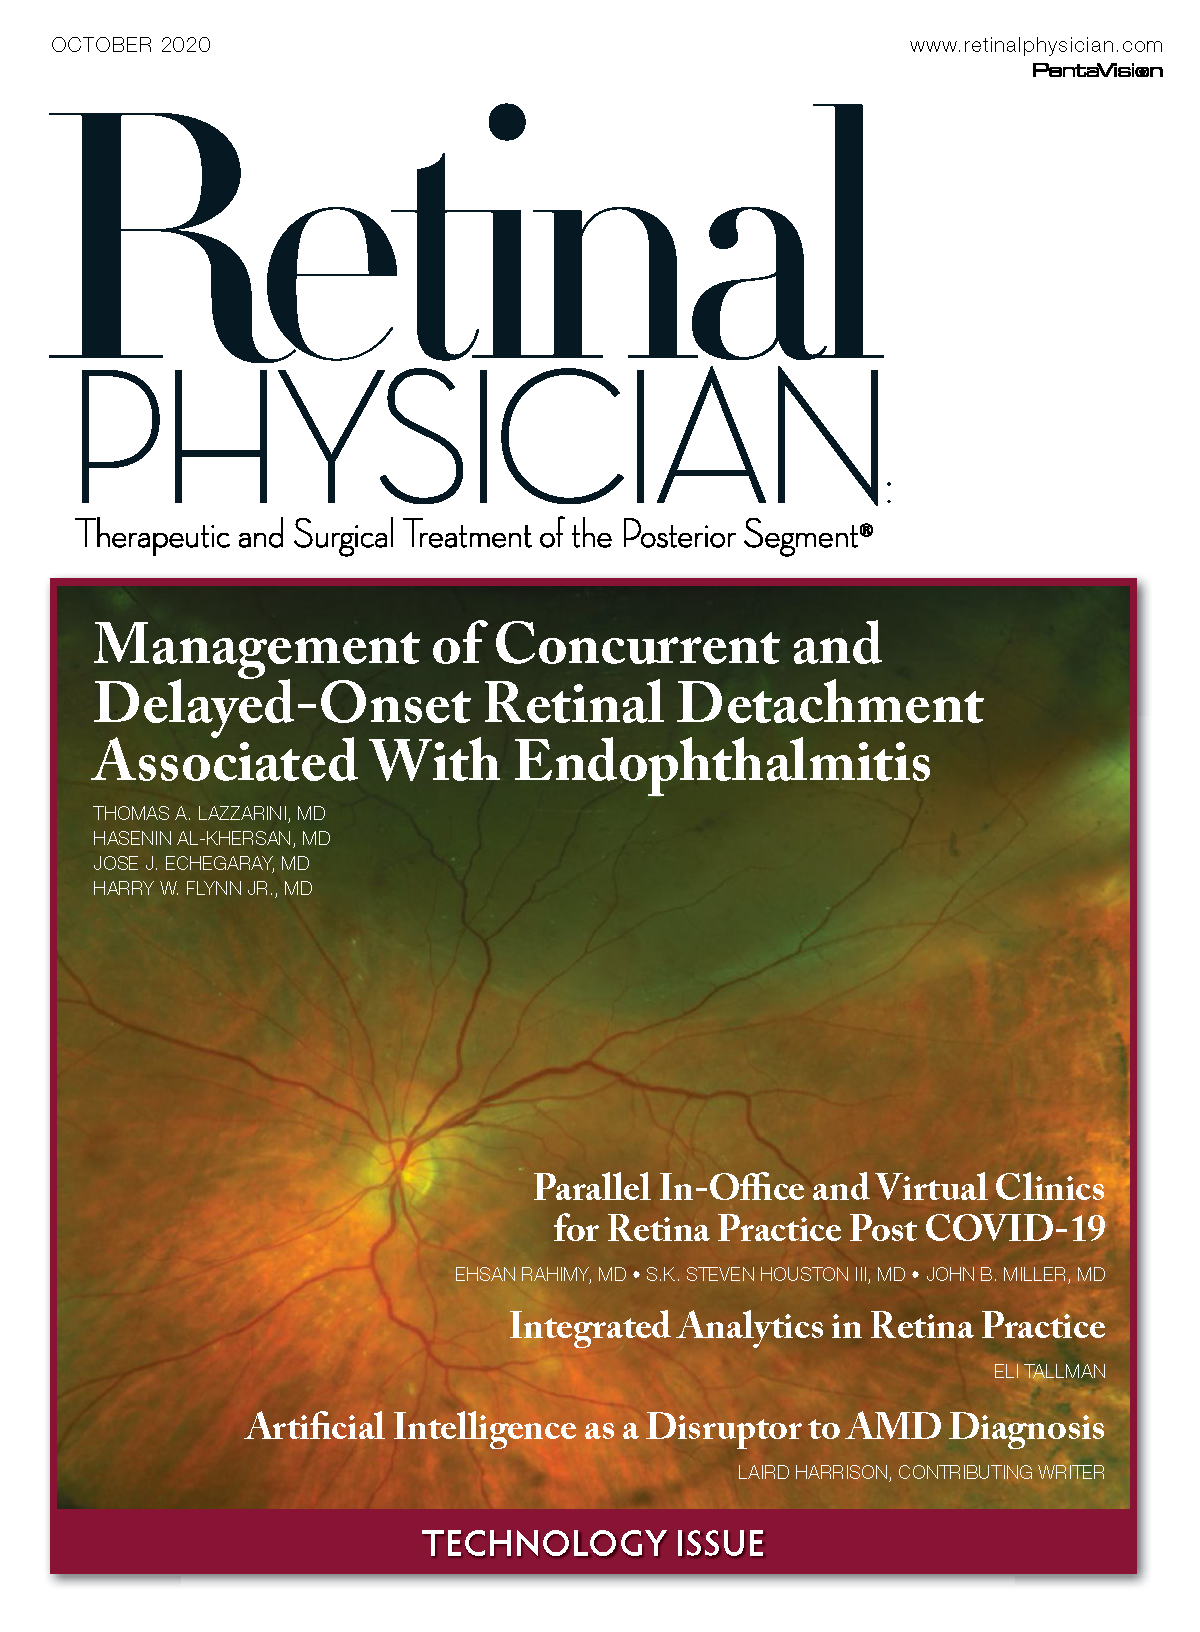 Retinal Physician October 2020 image